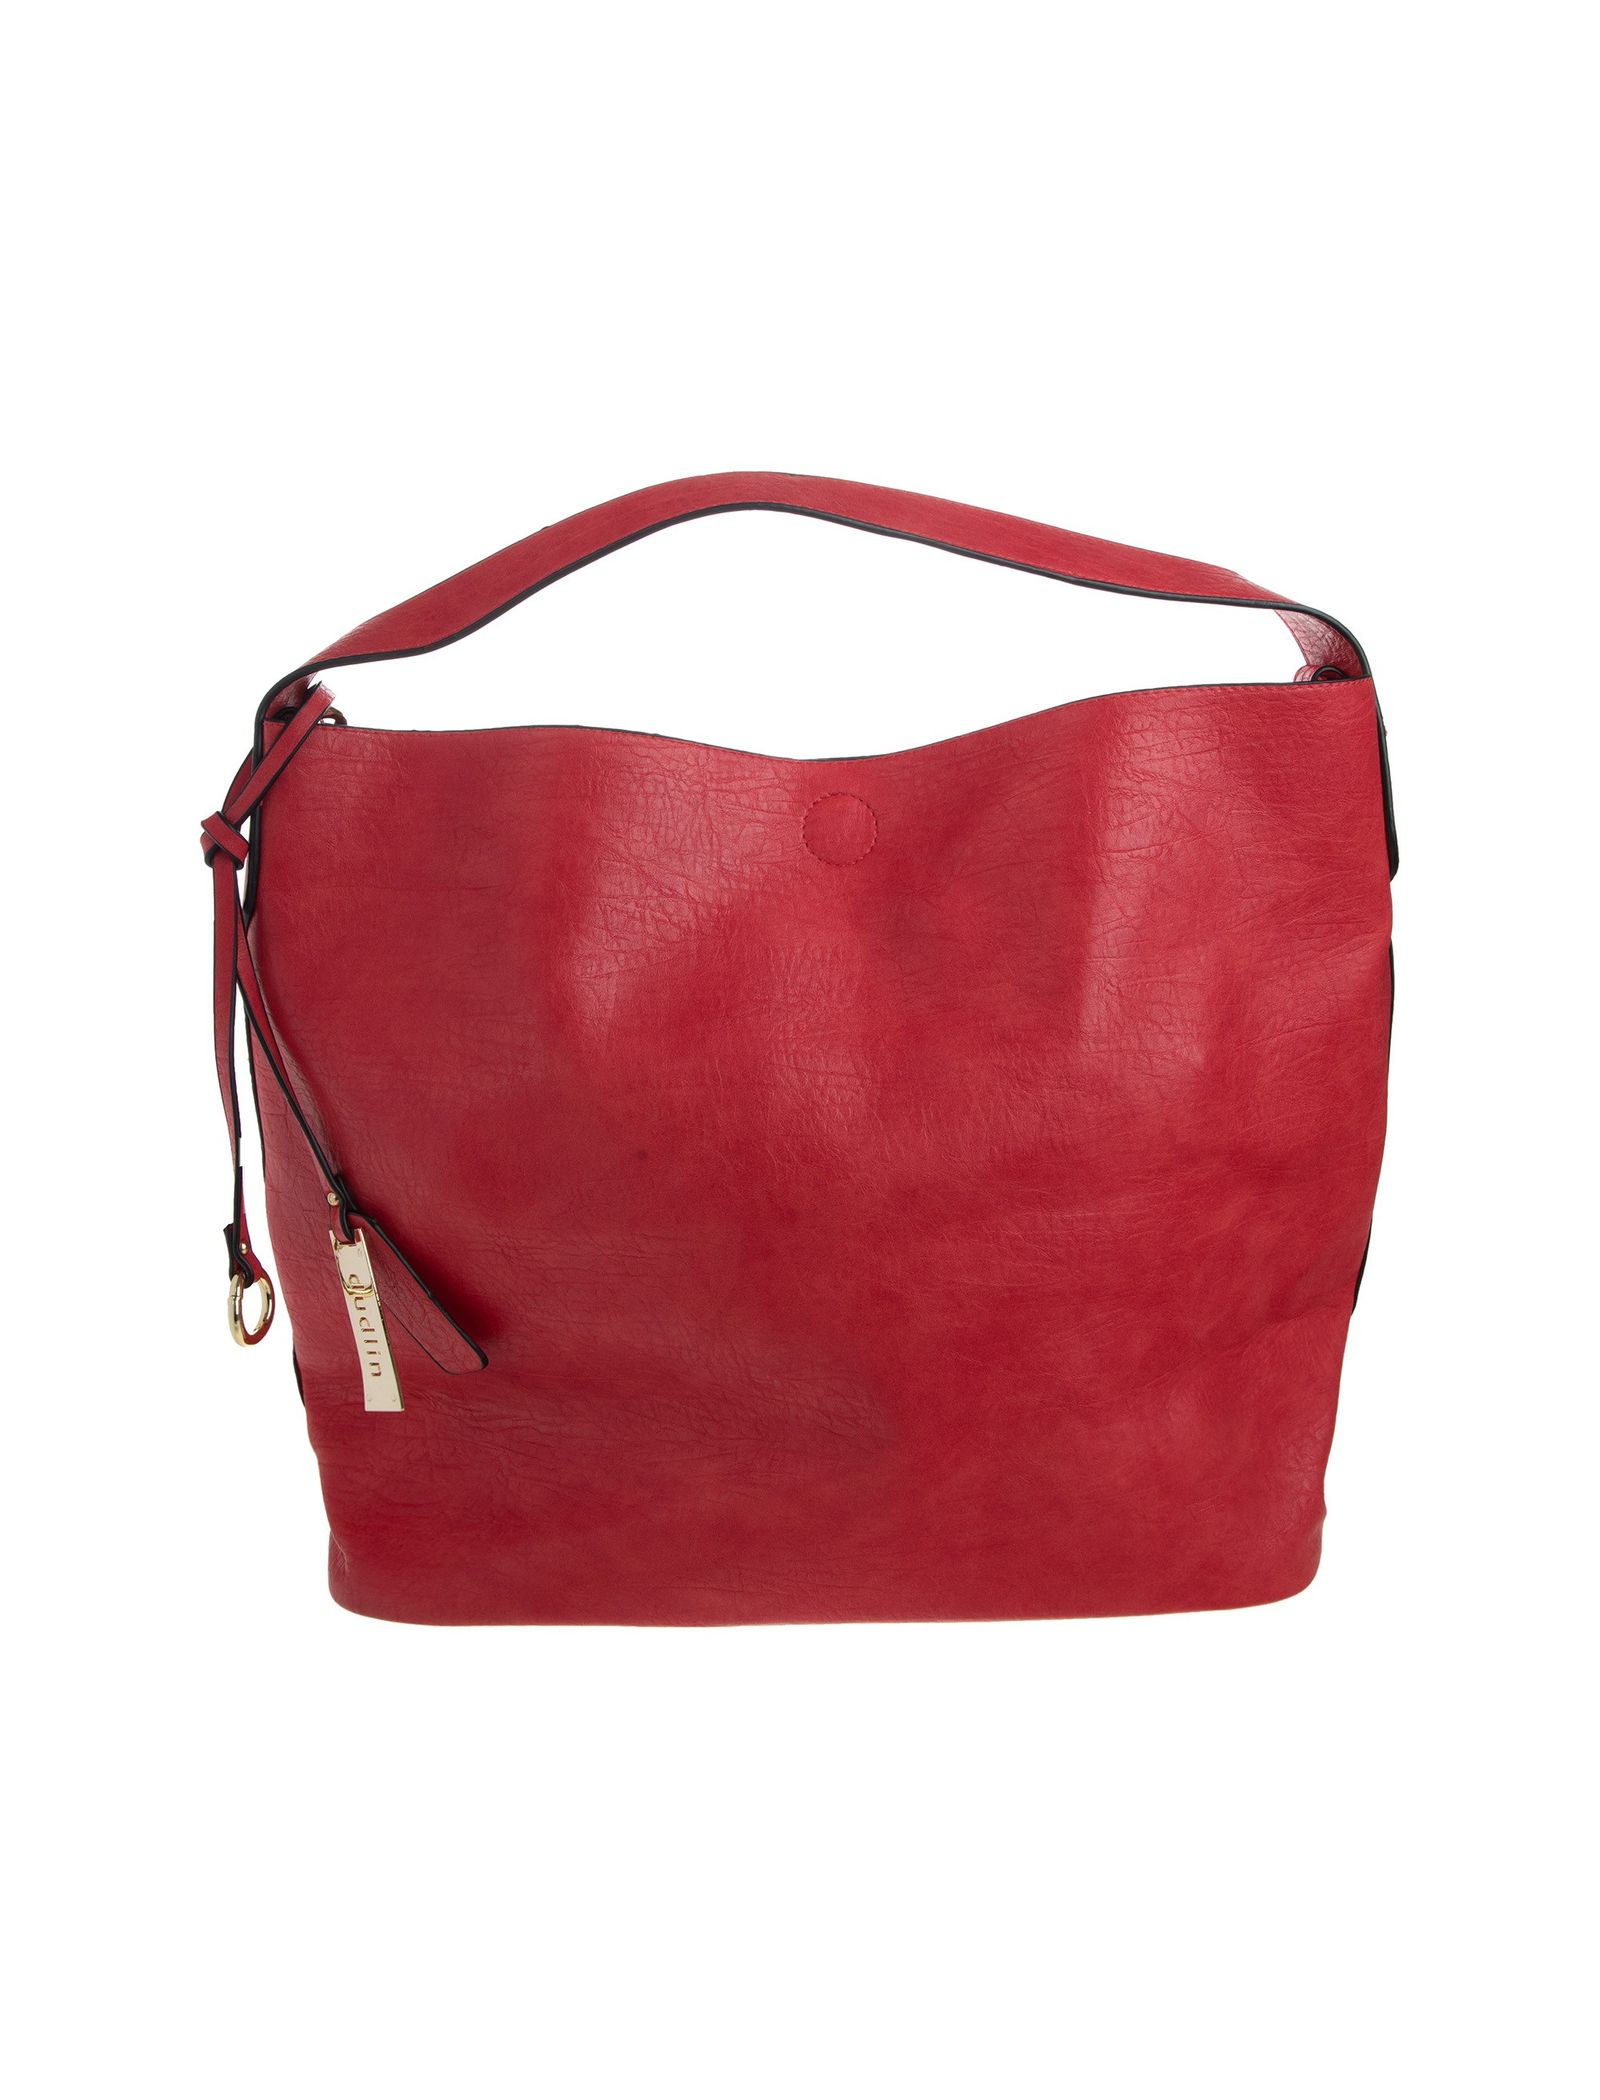 کیف دستی روزمره زنانه - دادلین تک سایز - قرمز - 4